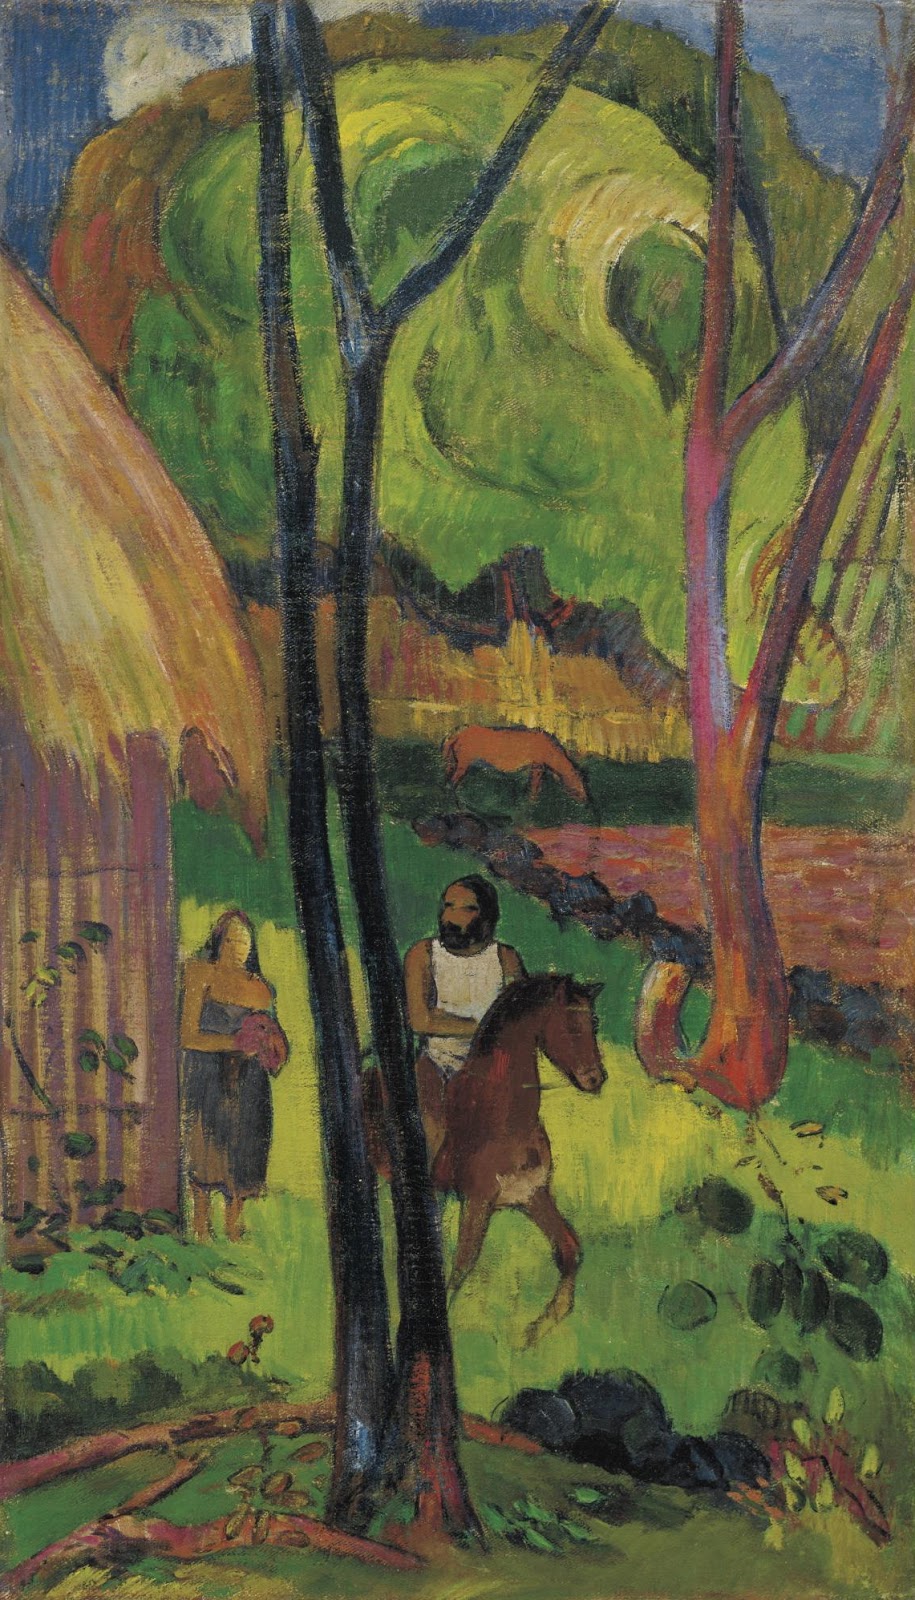 Paul+Gauguin-1848-1903 (394).jpg